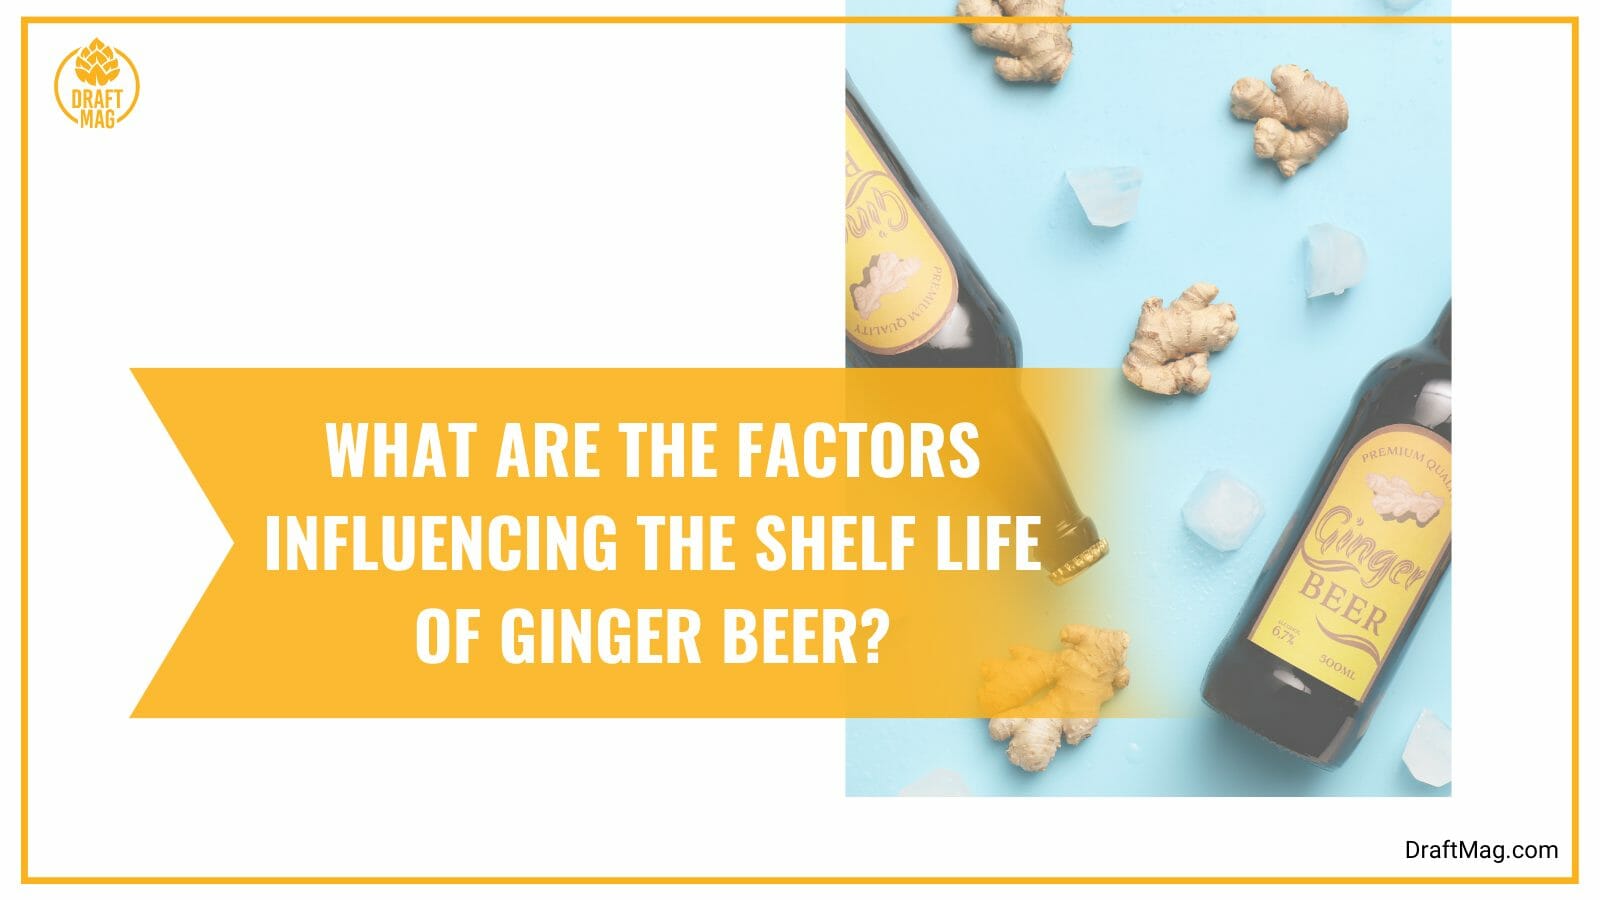 Factors influencing ginger beer